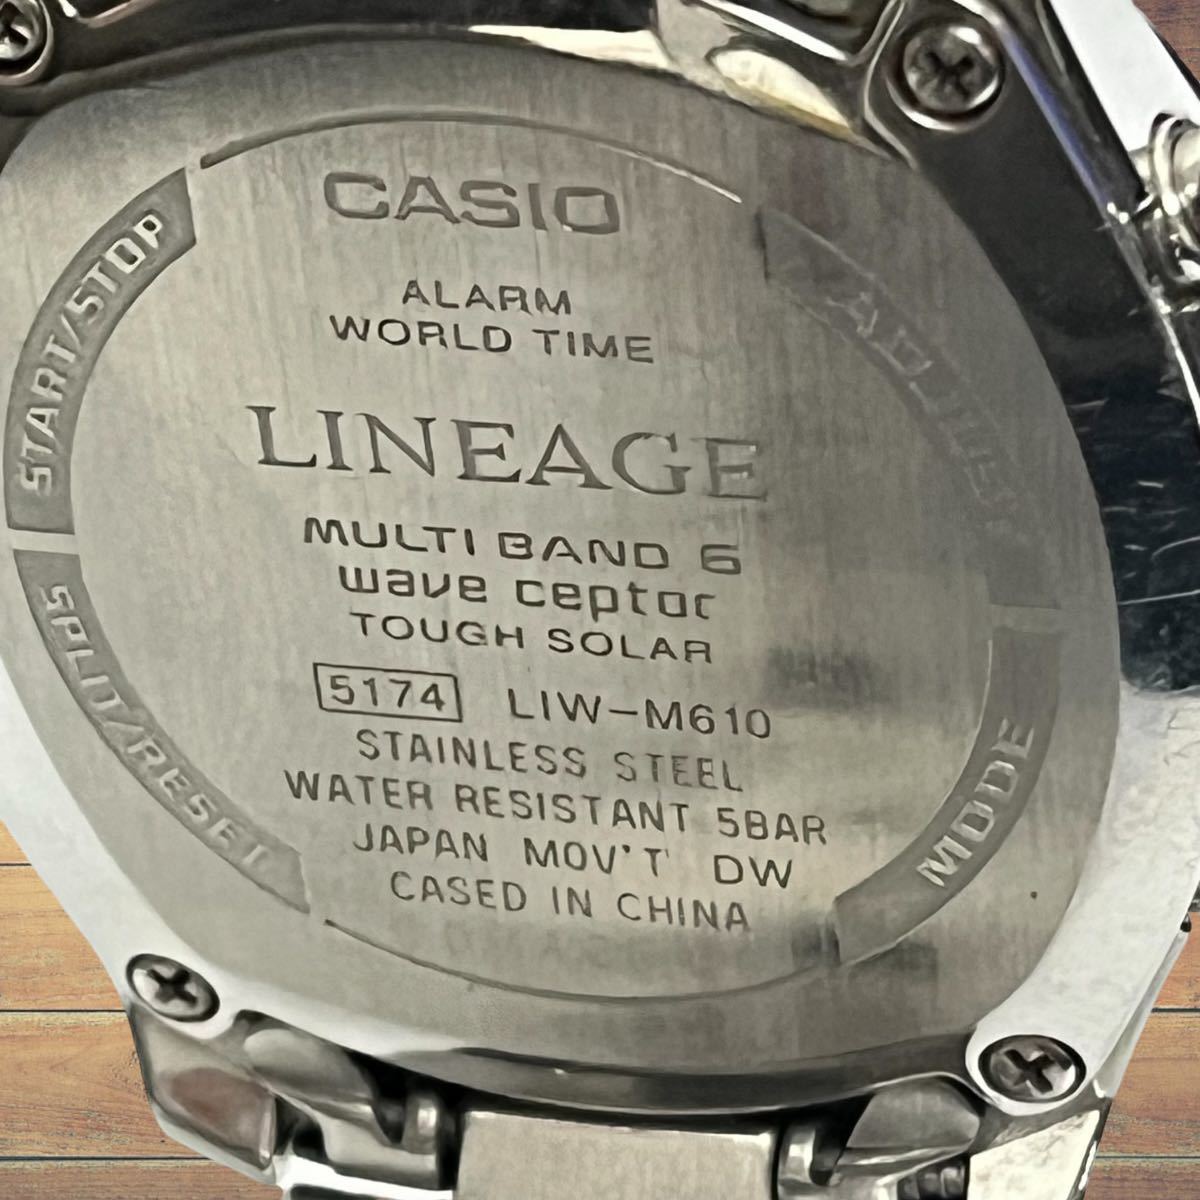 CASIO / カシオ LINEAGE リニエージ メンズ腕時計 LIW-M610 タフソーラー デイト 電波 クロノグラフ ネイビー文字盤 _画像5